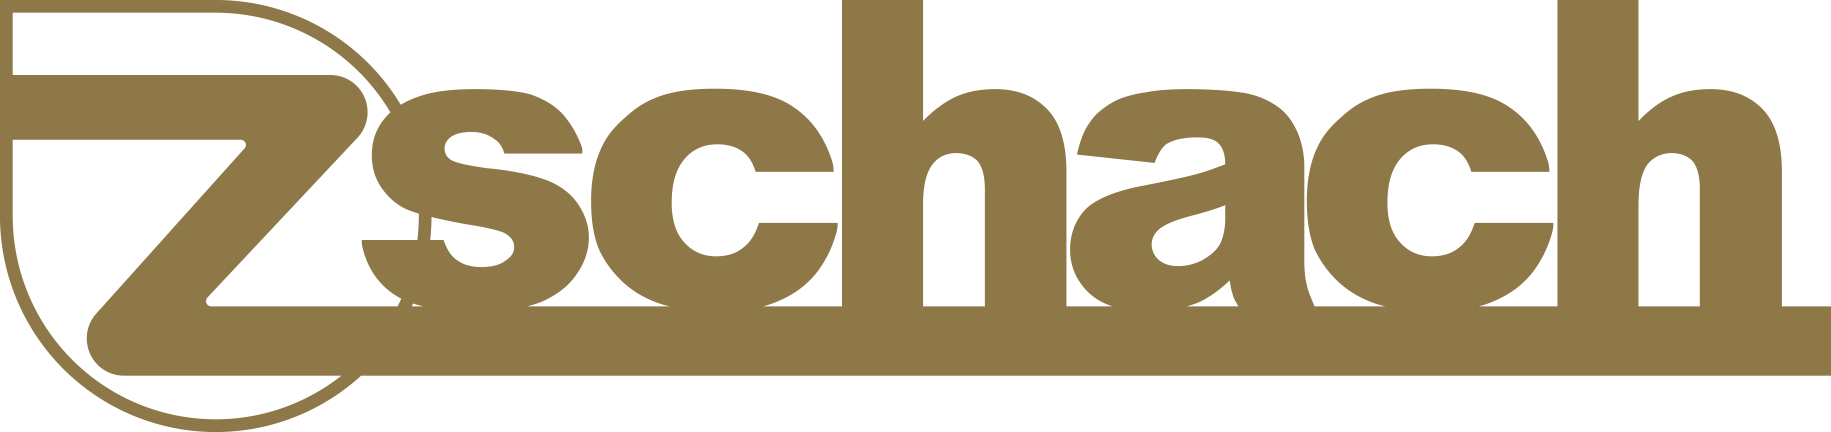 Zschach Center Logo